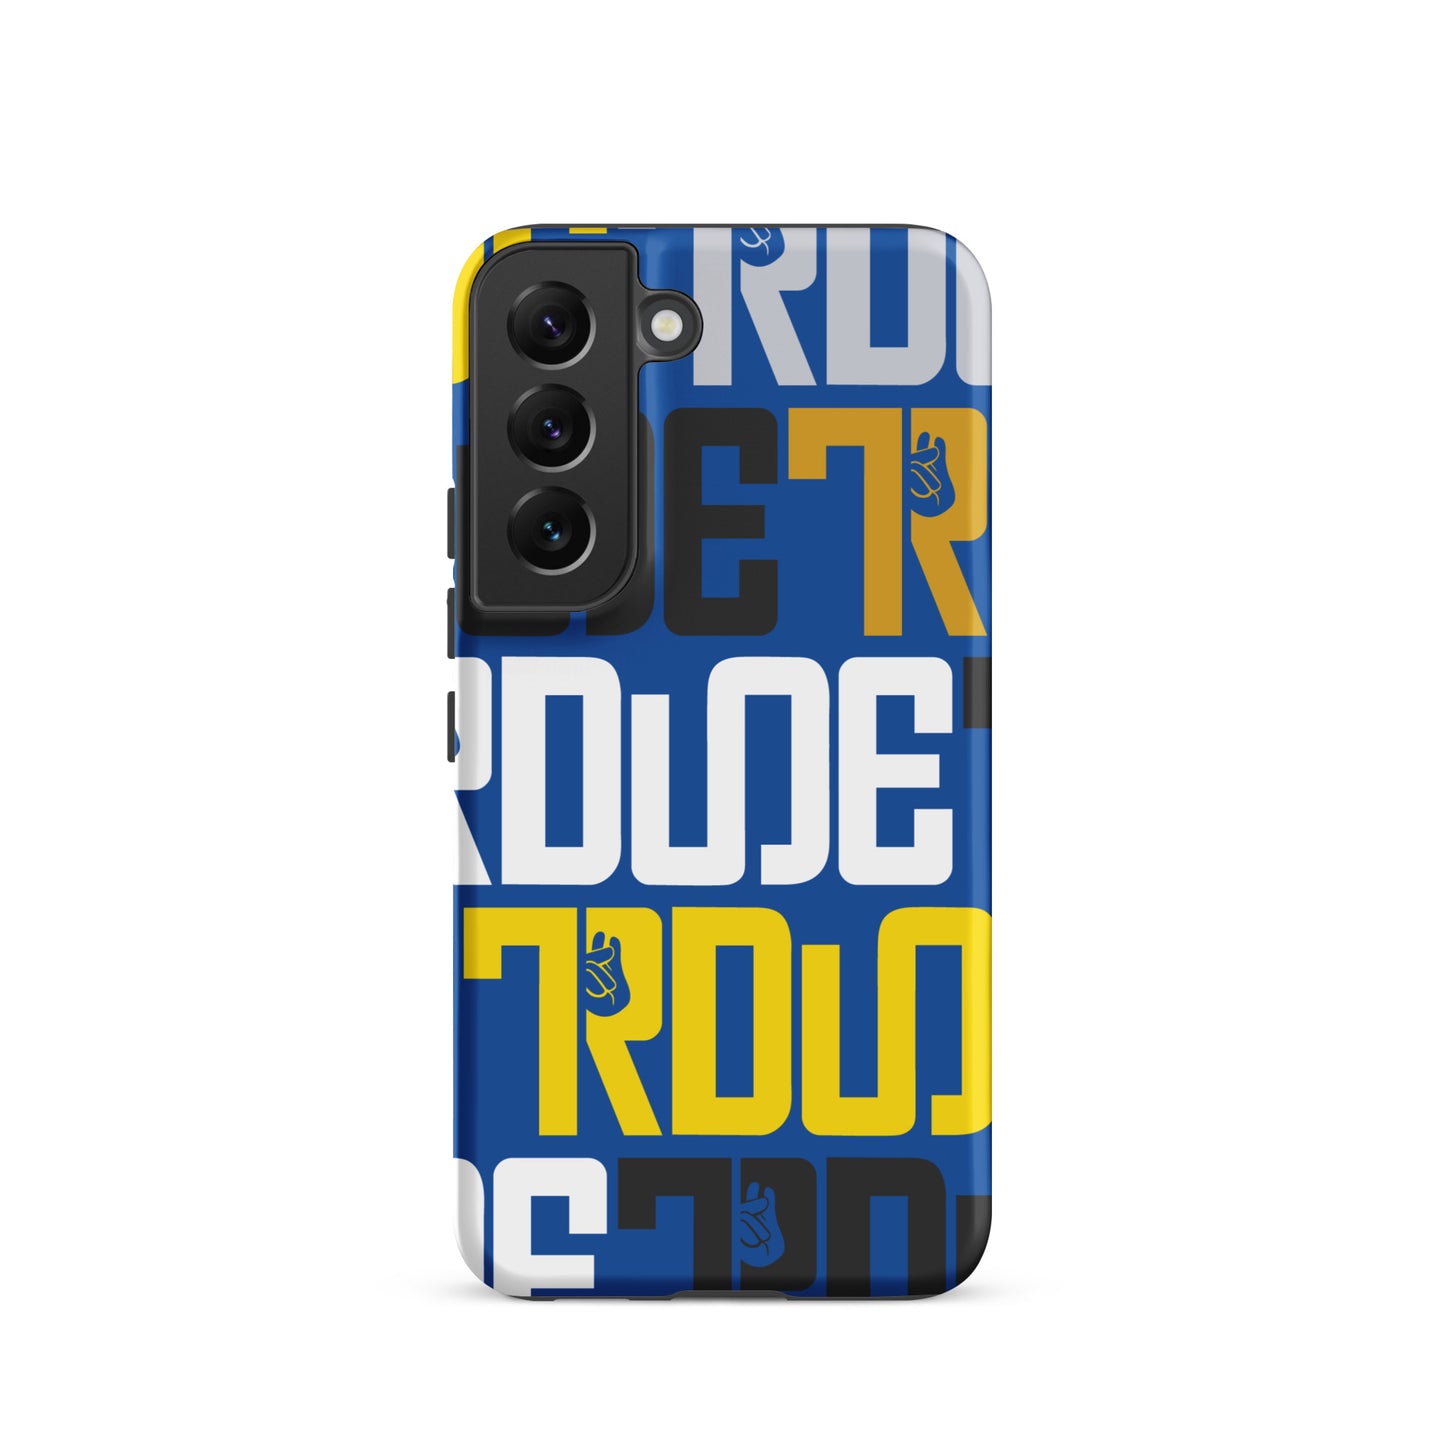 TRDude Samsung® Tough Case